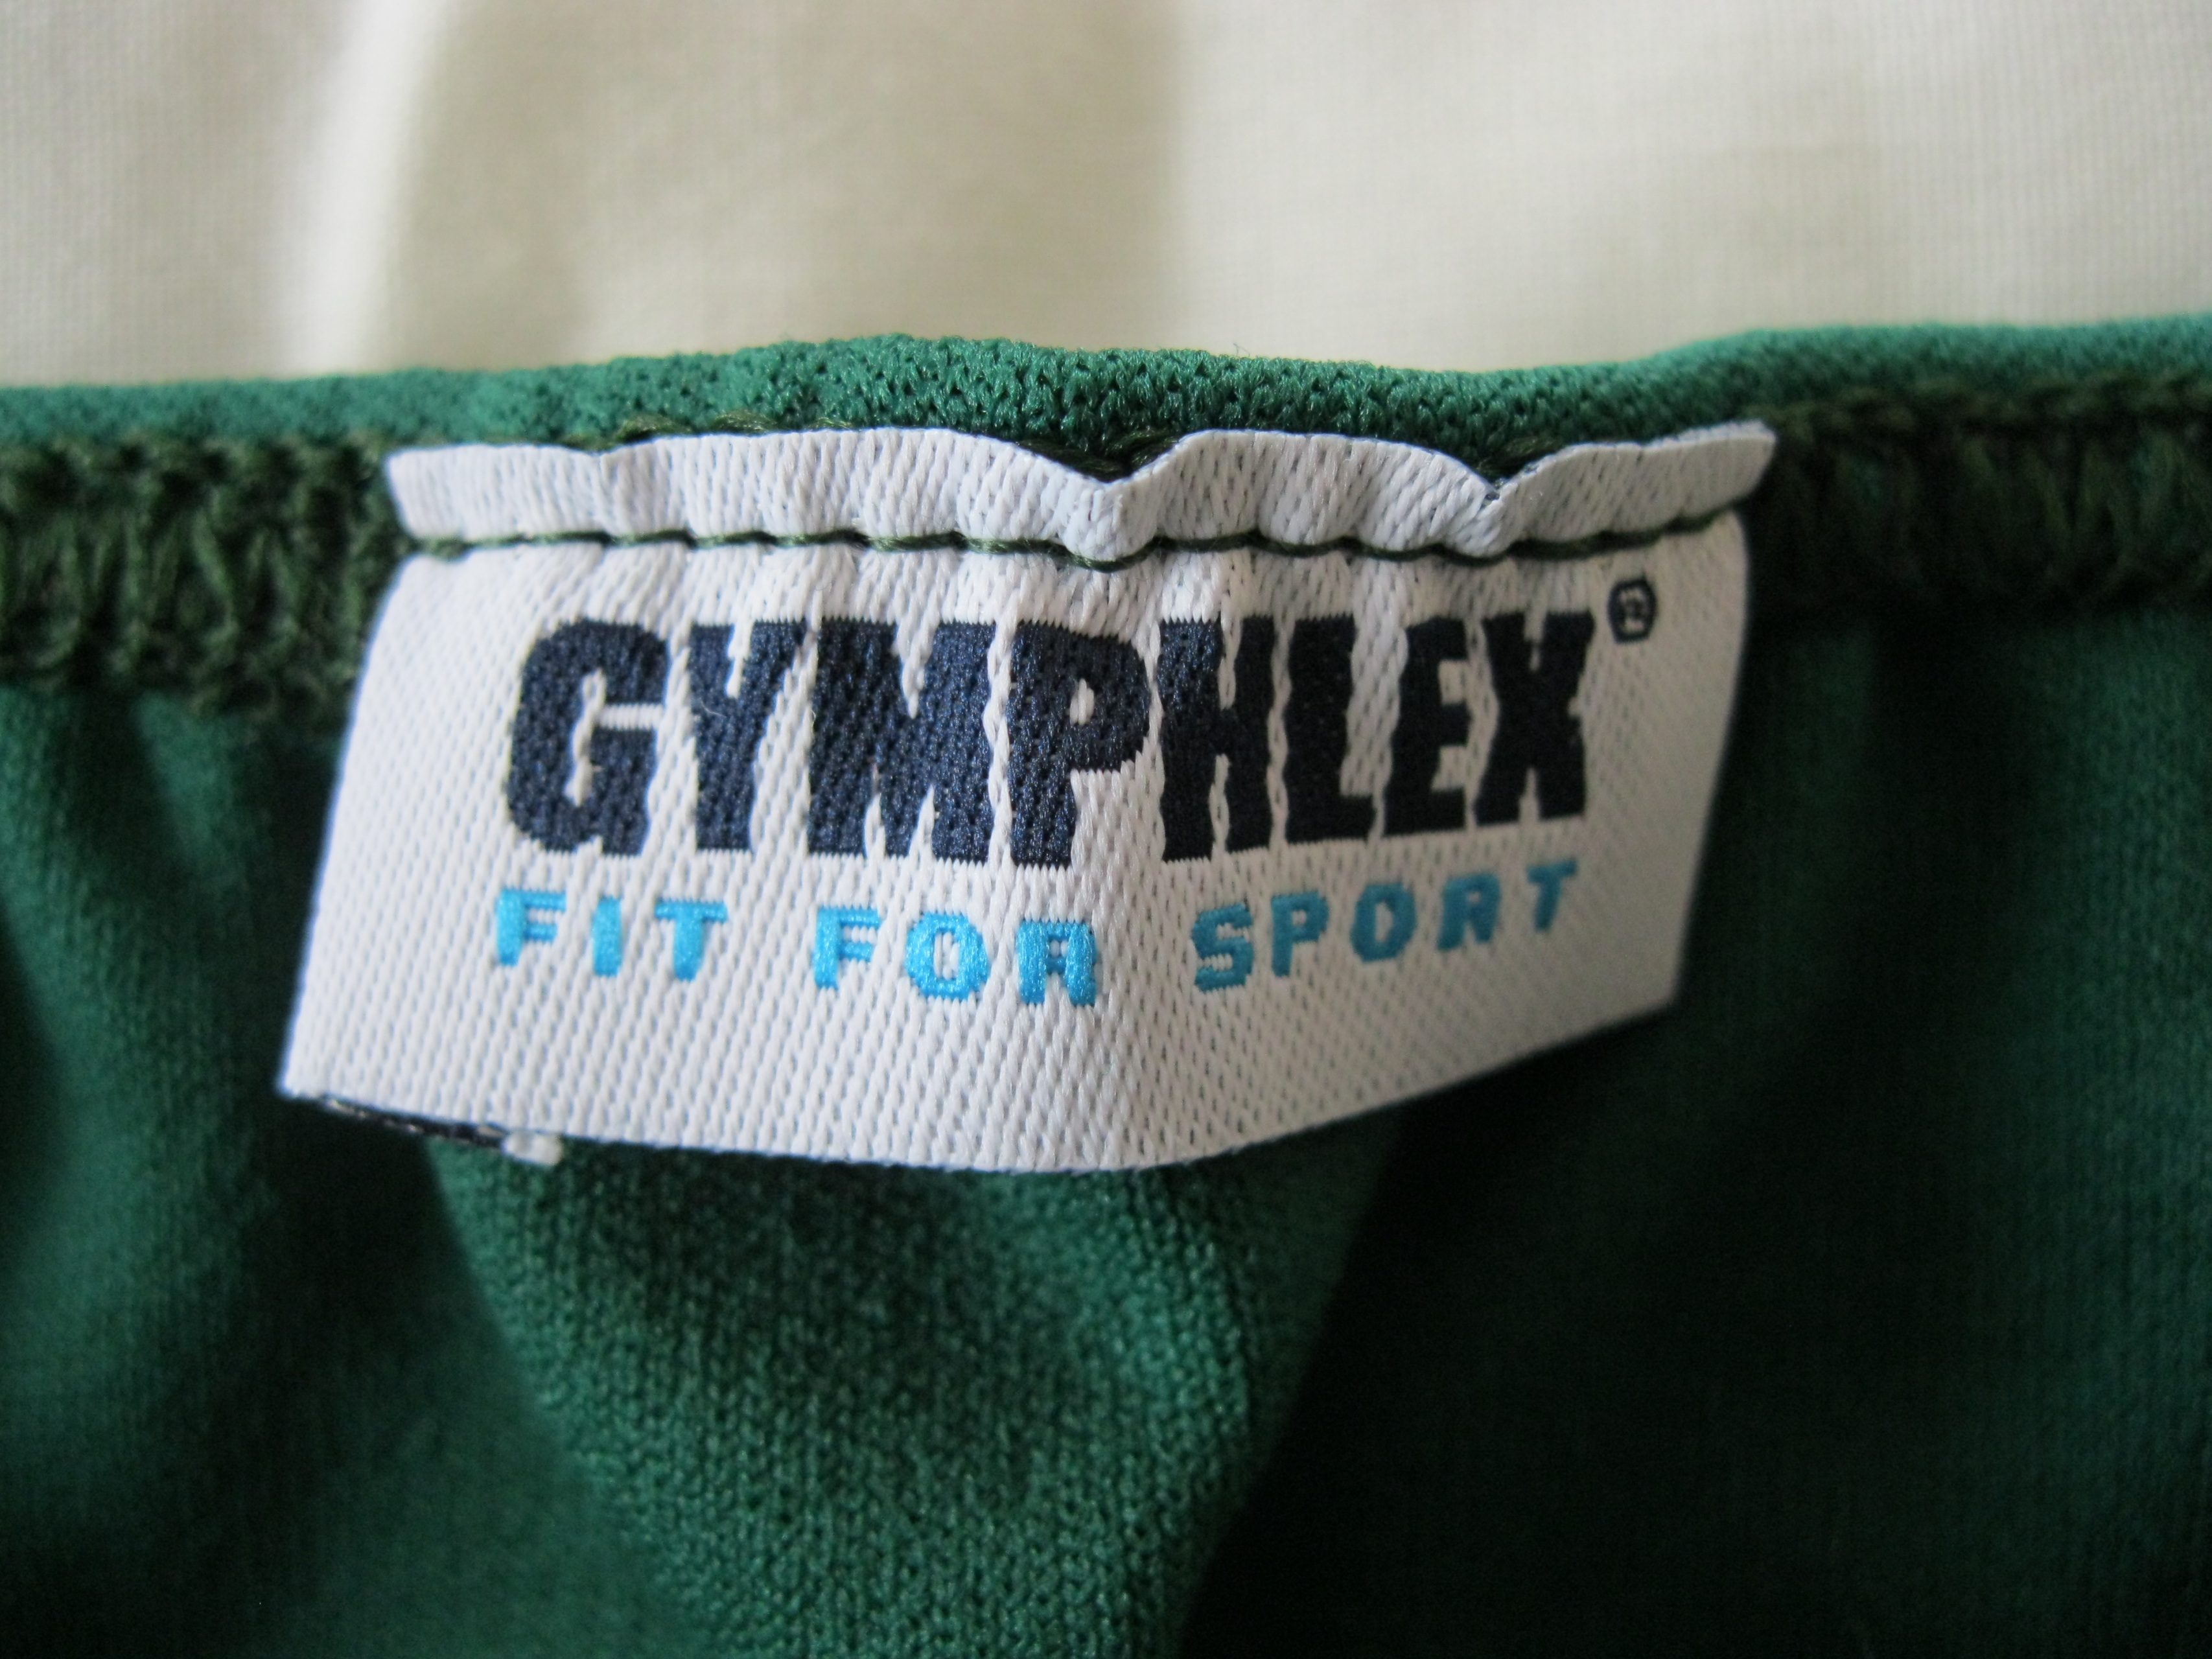 Girls GYMPHLEX BLACK School/Gym Knickers/Briefs Size L (28 - 34W) NEW 09/11